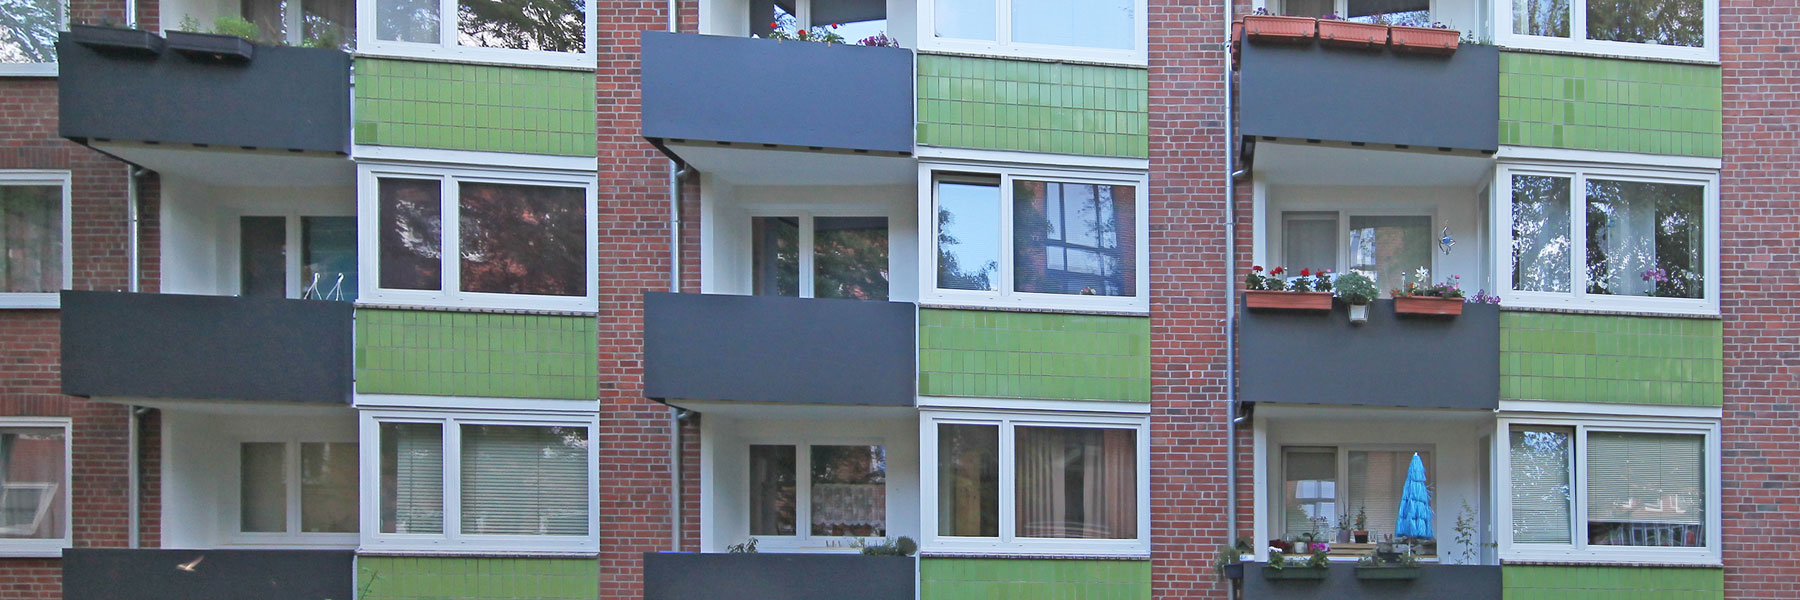 Instandsetzung und Modernisierung von stadtbildprägenden Wohngebäuden, Hamburg 